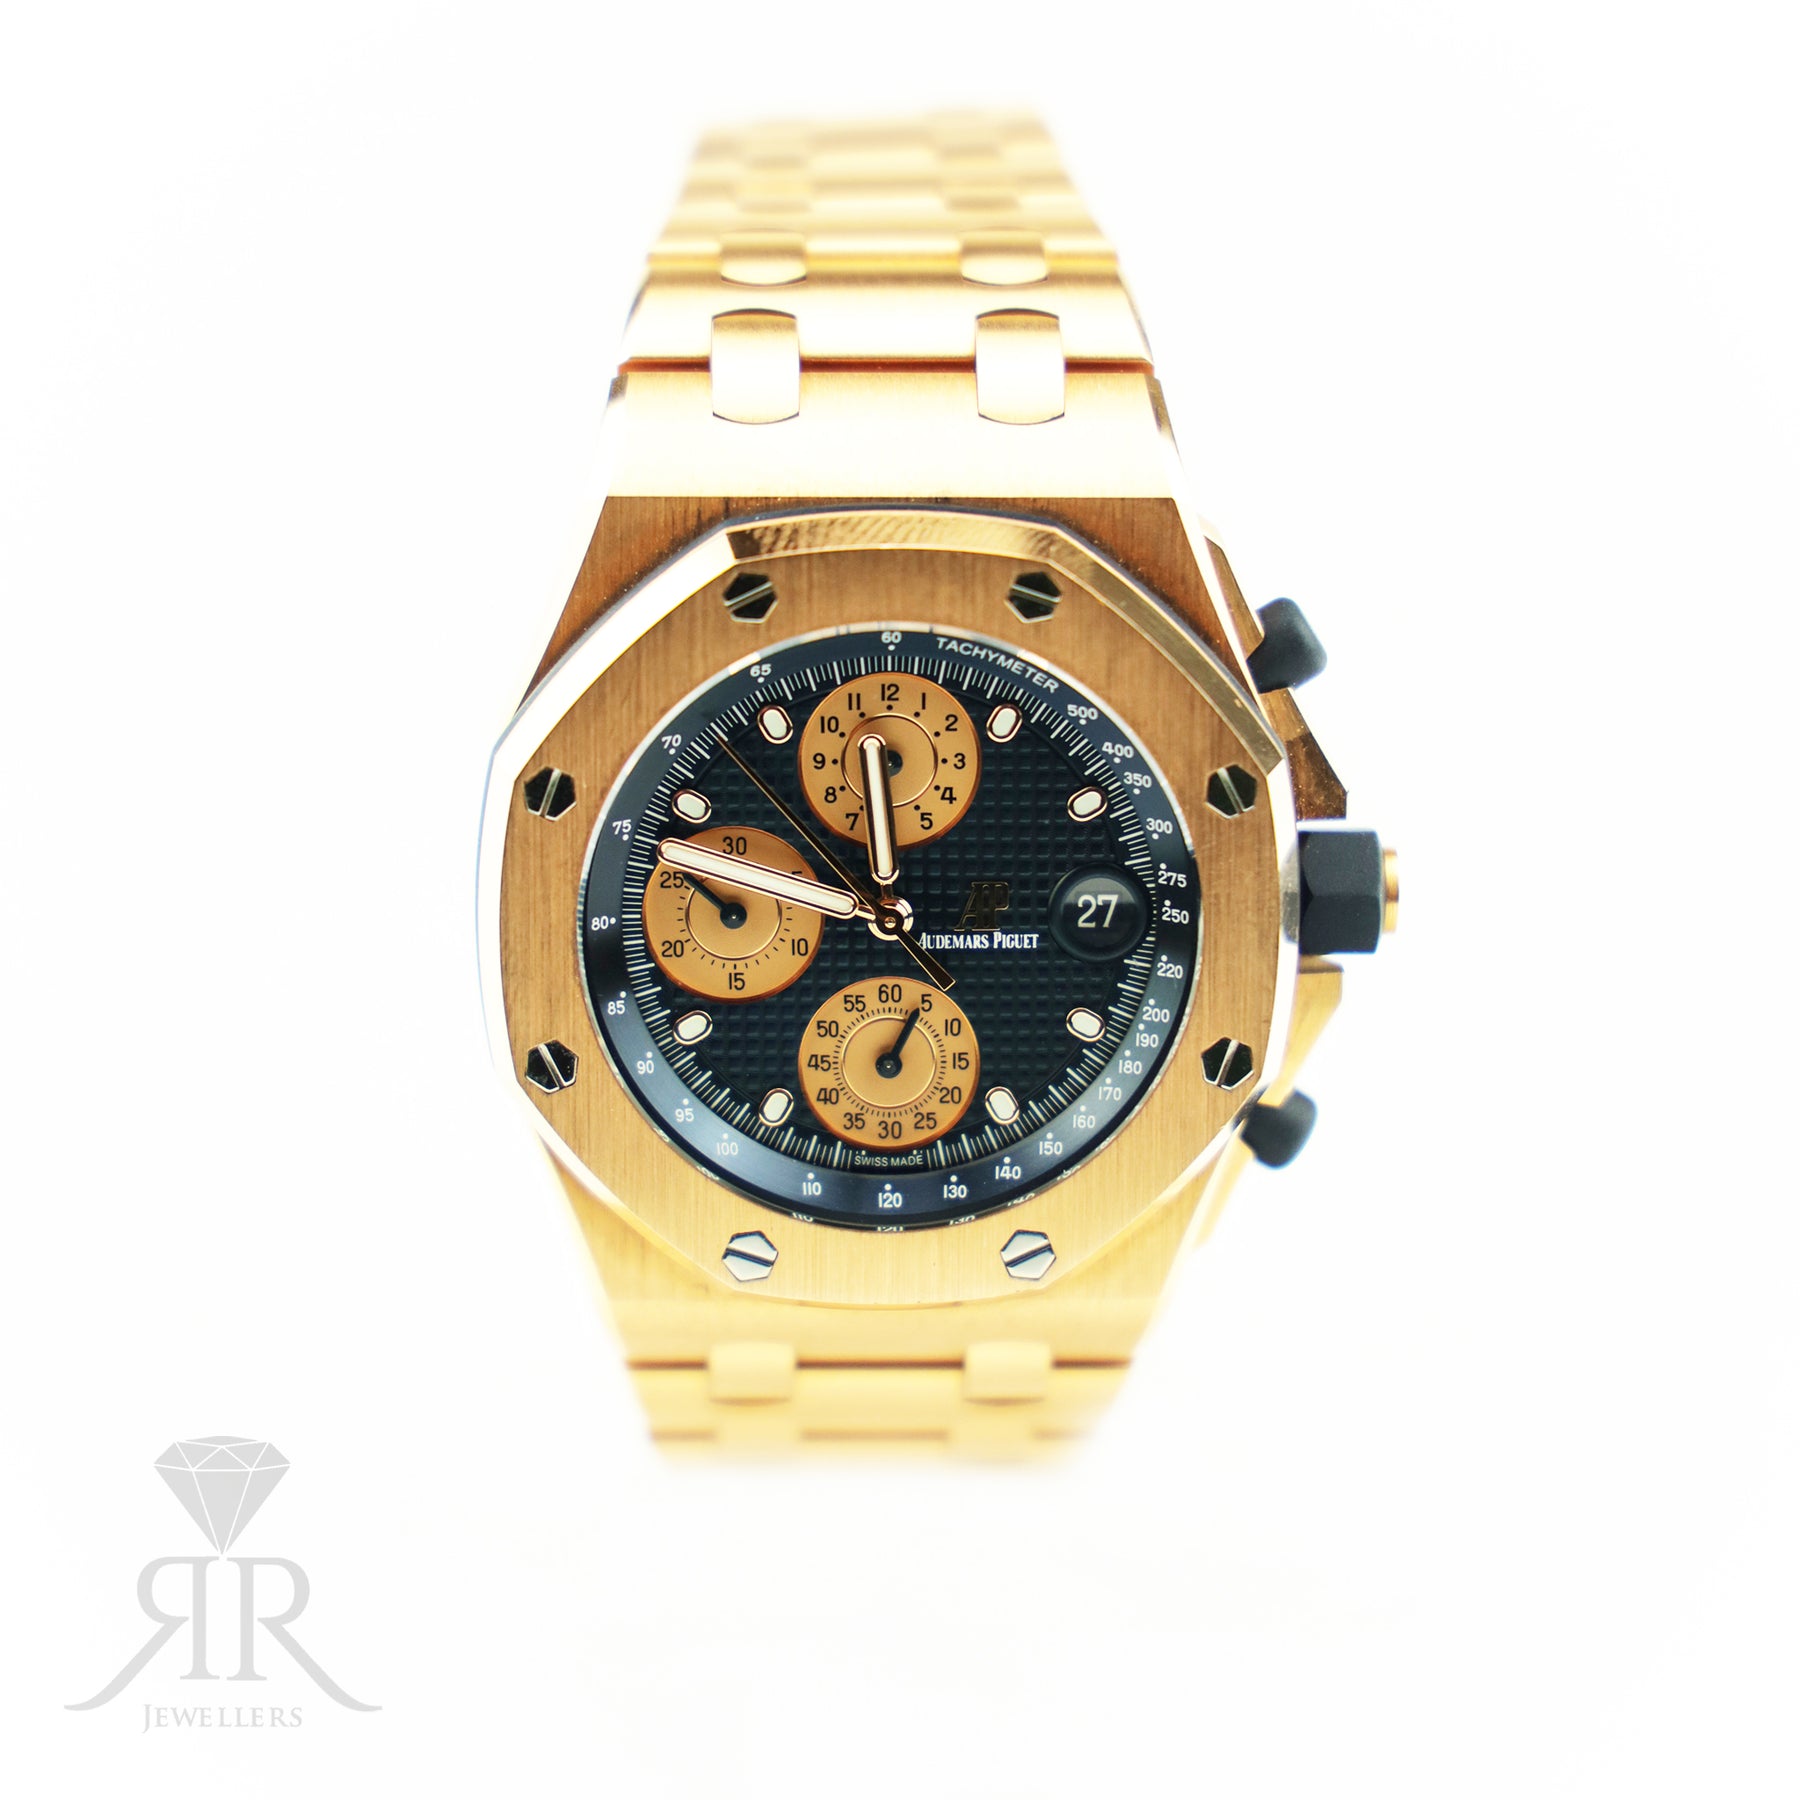 Audemars Piguet 2022 Limited Edition Royal Oak Offshore Chronograph Rose Gold